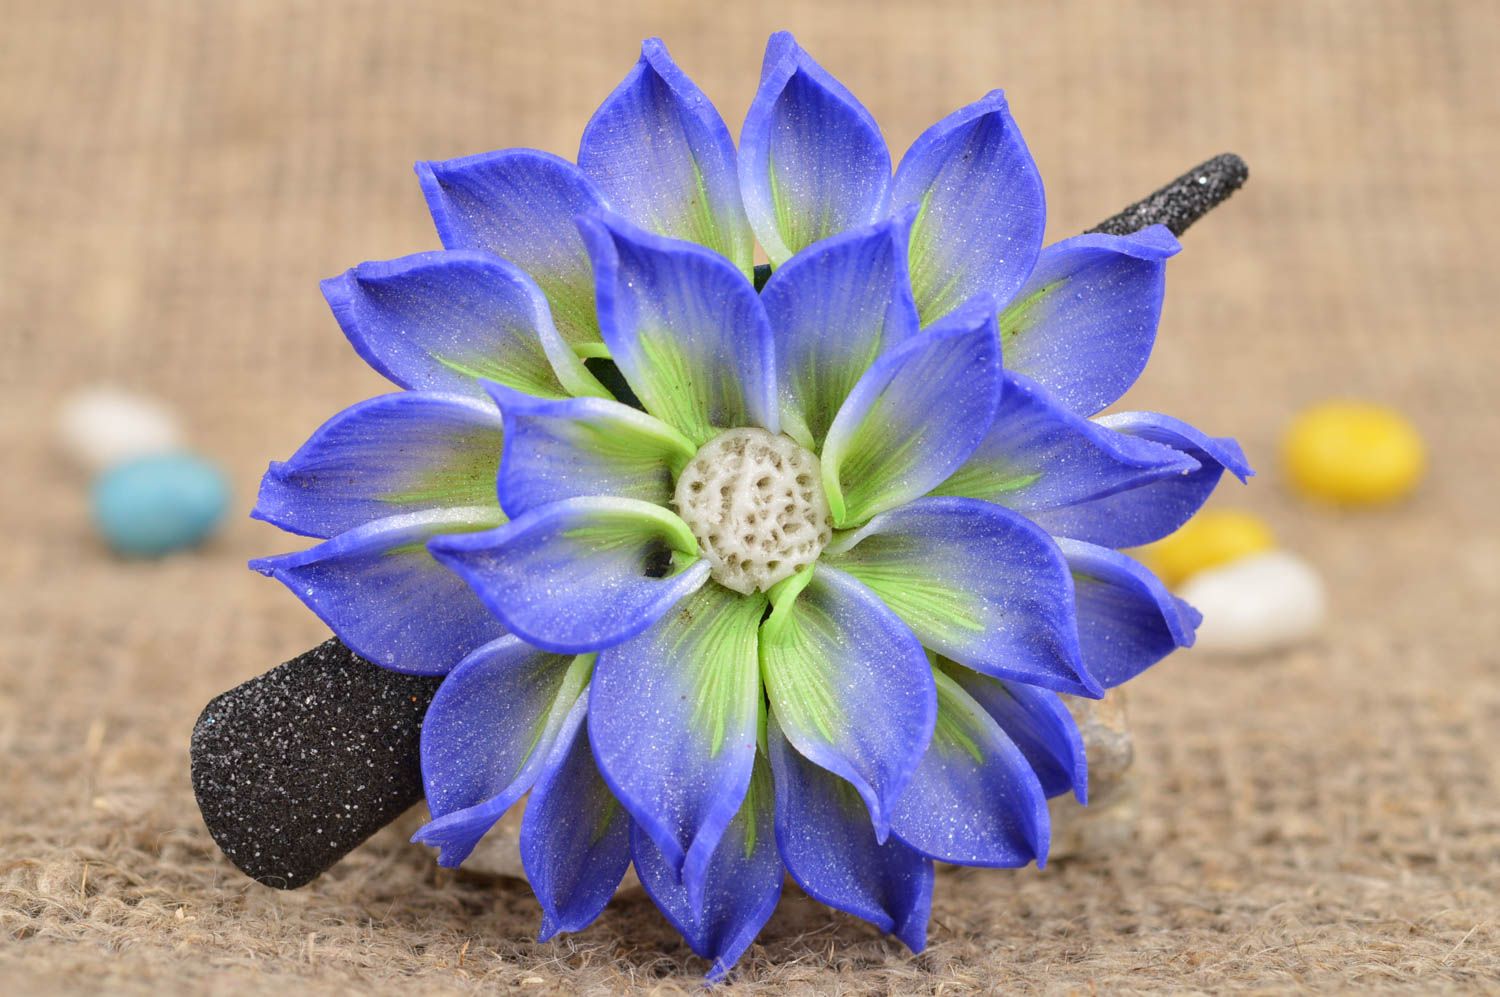 Blumen Haarspange in Blau aus Polymerton bosseliert nicht groß schön Handarbeit foto 1